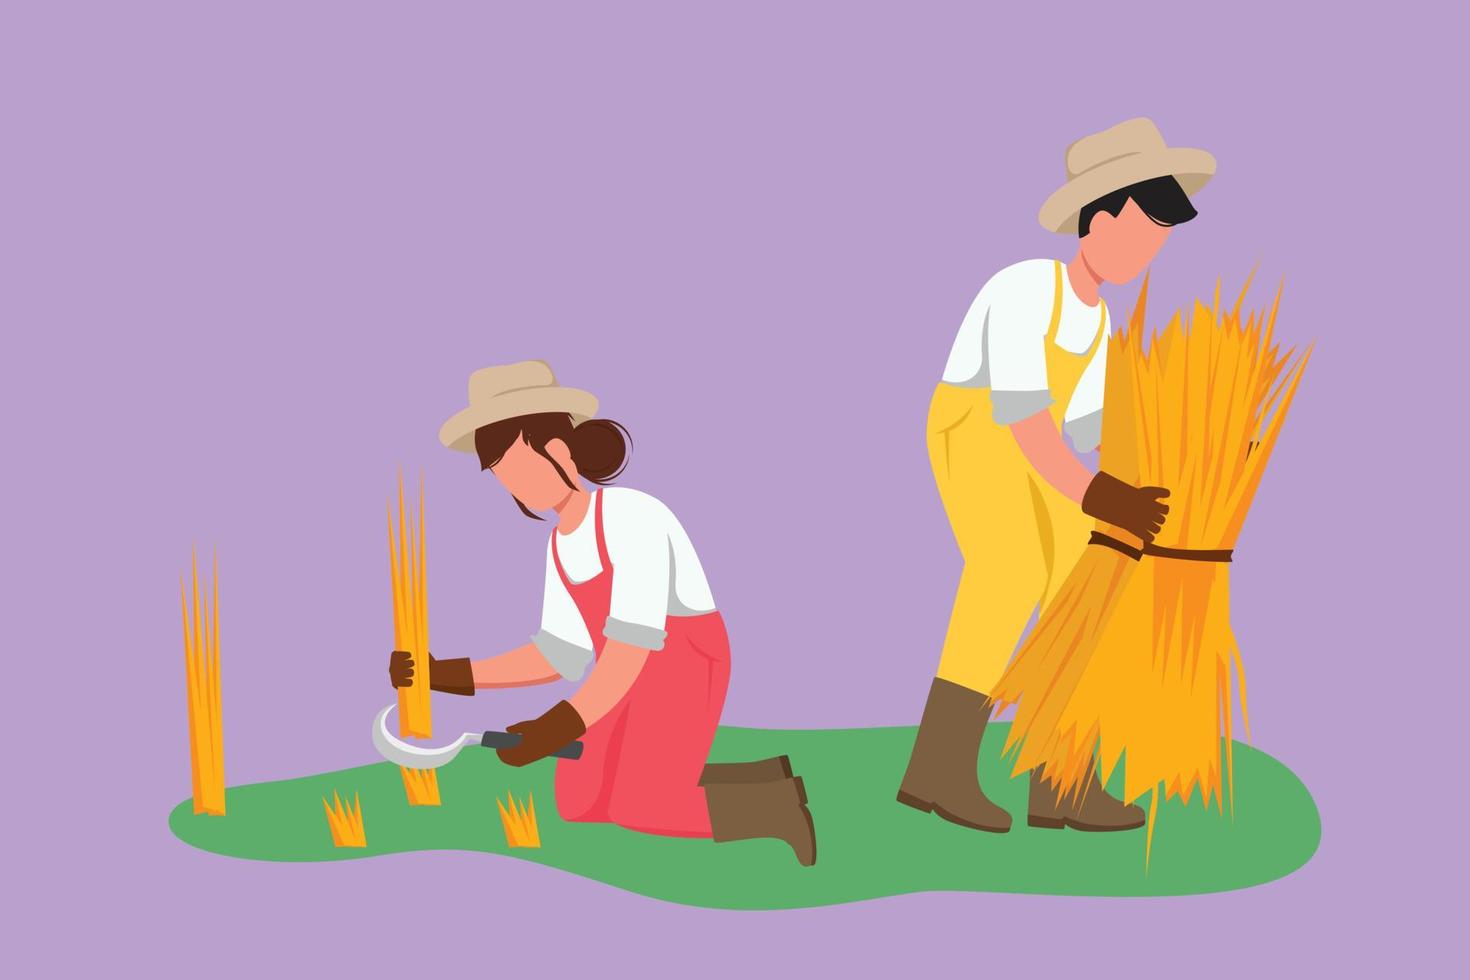 estilo plano dos desenhos animados desenhando casal feliz agricultores colhendo arroz e também há arroz que foi amarrado. época de colheita em campos rurais de arroz. agricultura de sucesso. ilustração vetorial de design gráfico vetor